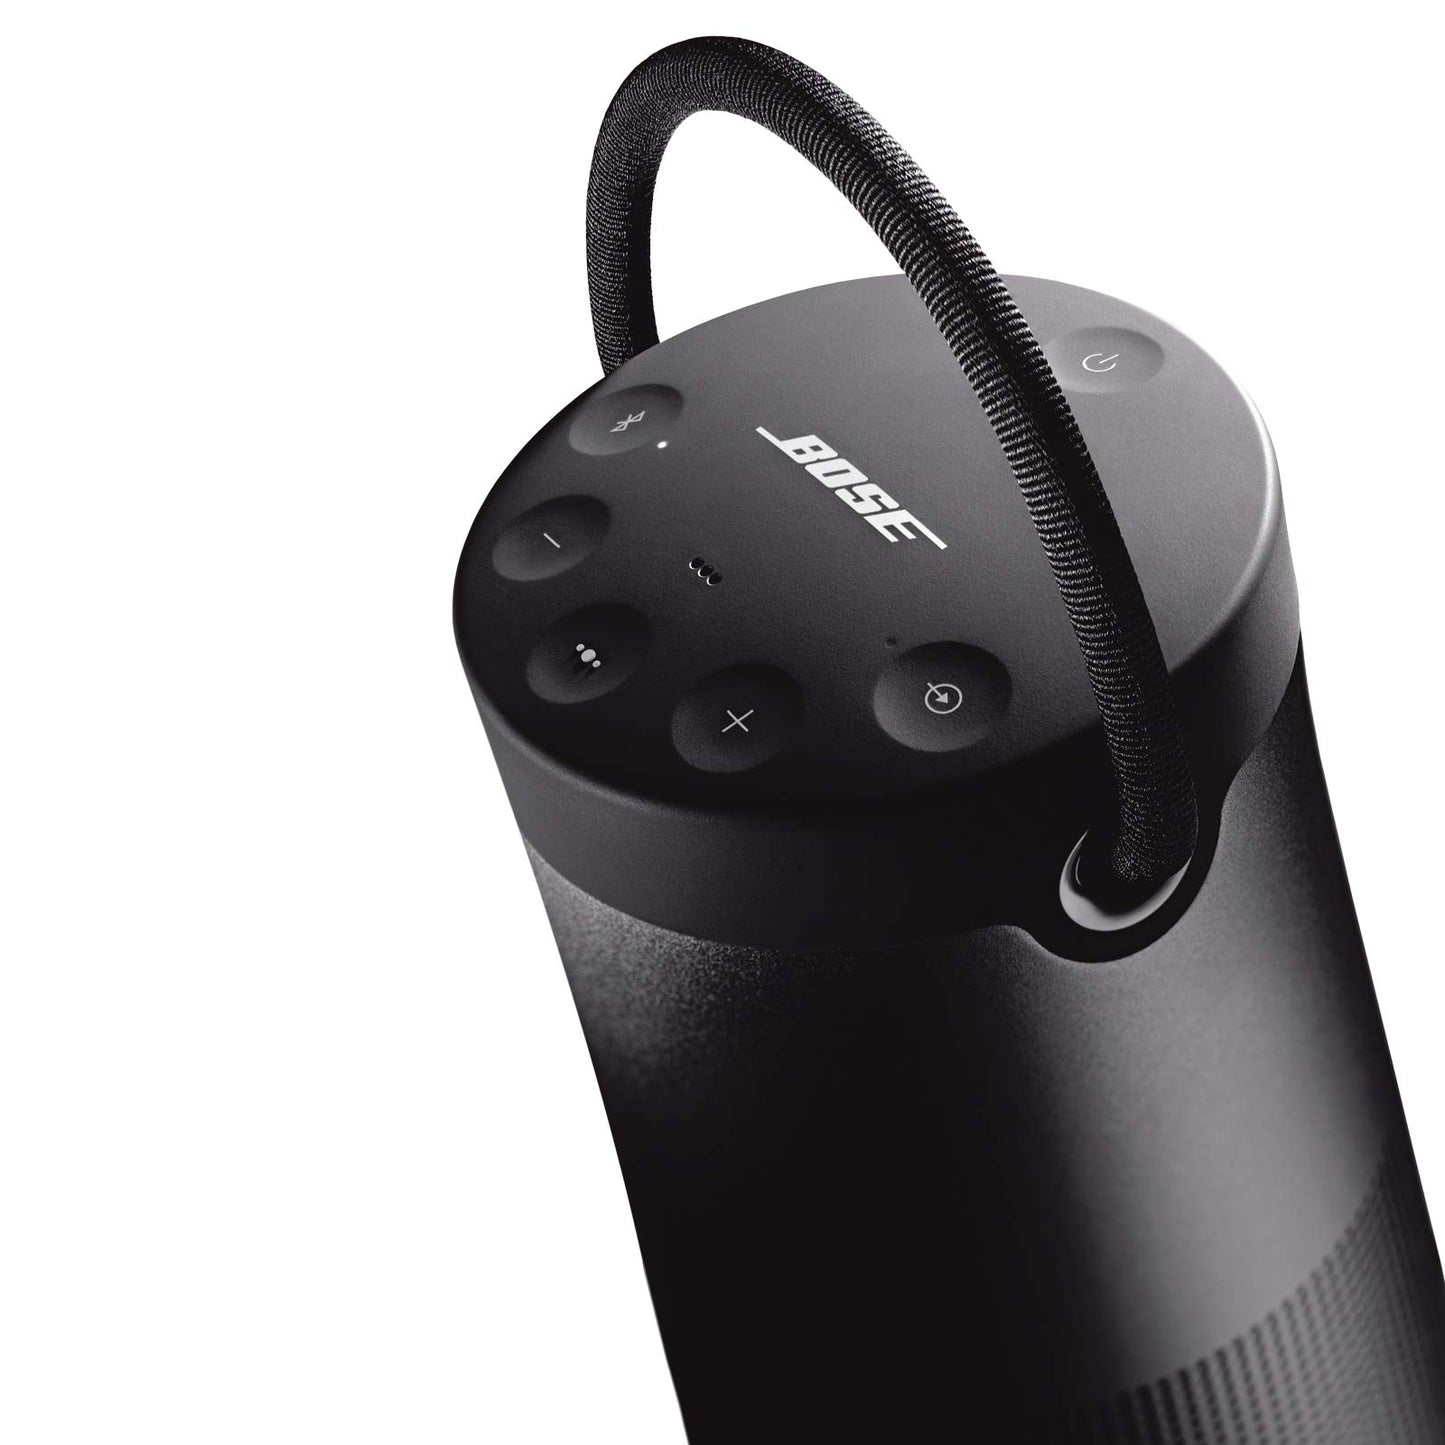 Bose SoundLink Revolve+ (Series II) Portable Bluetooth Speaker, Black & SoundLink Revolve Charging Cradle Black